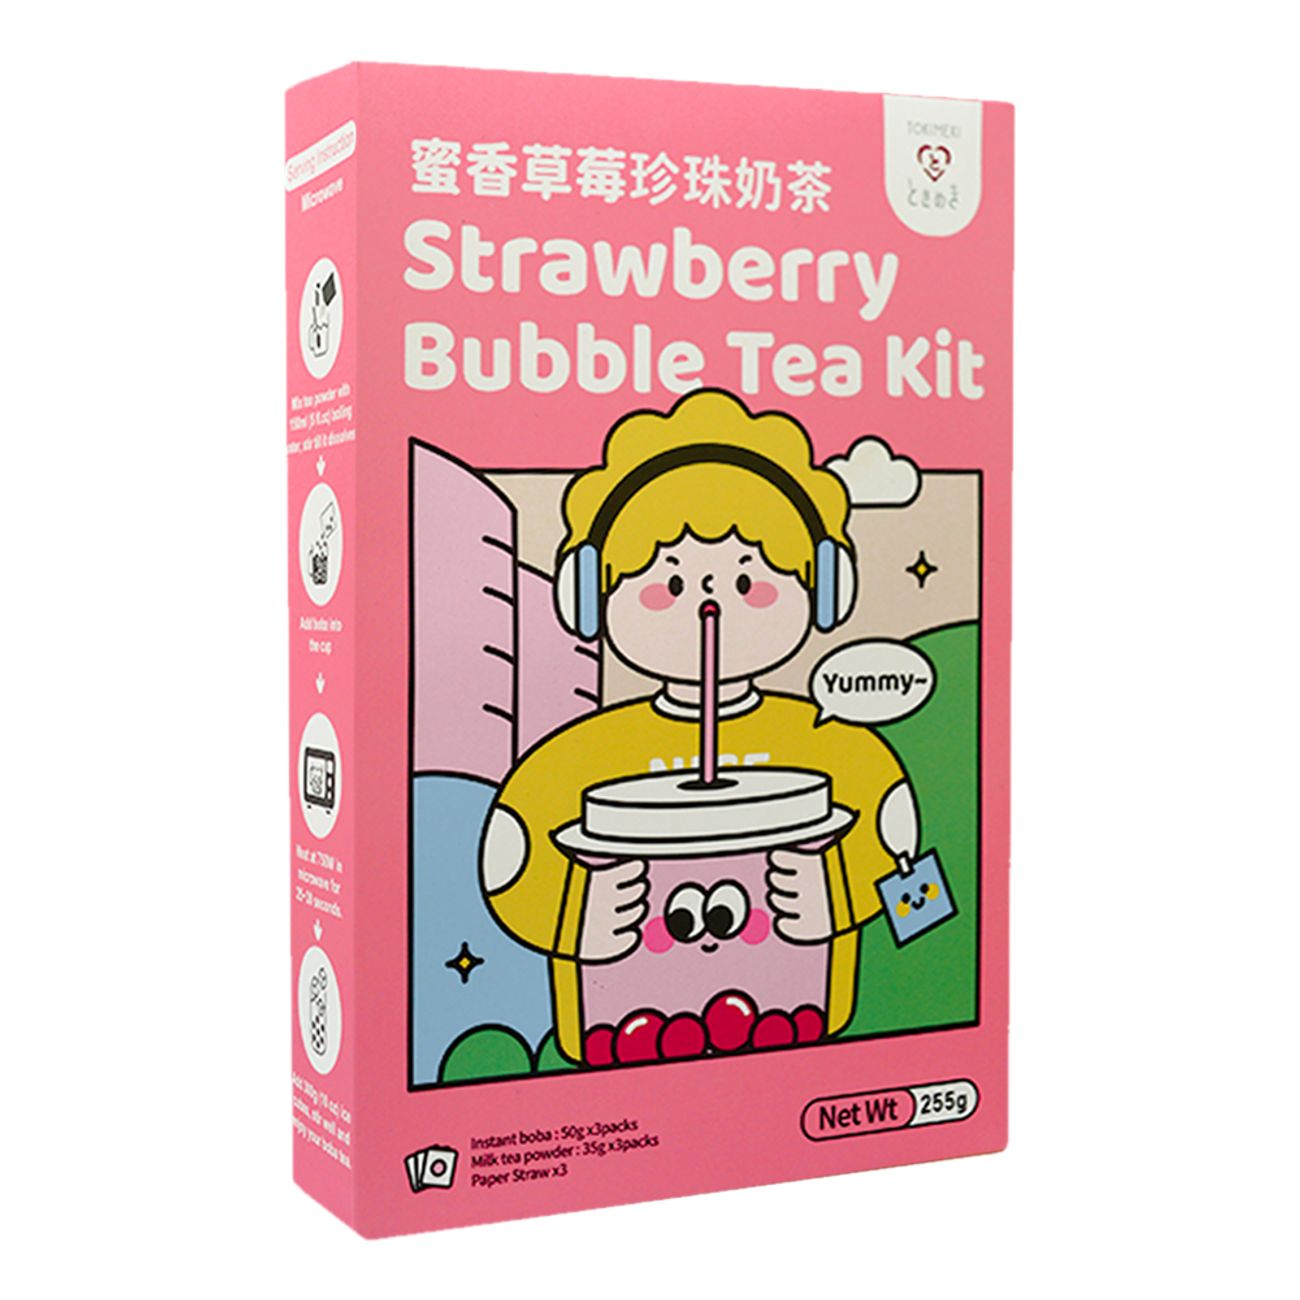 tokimeki-bubble-tea-kit-strawberry-99249-1